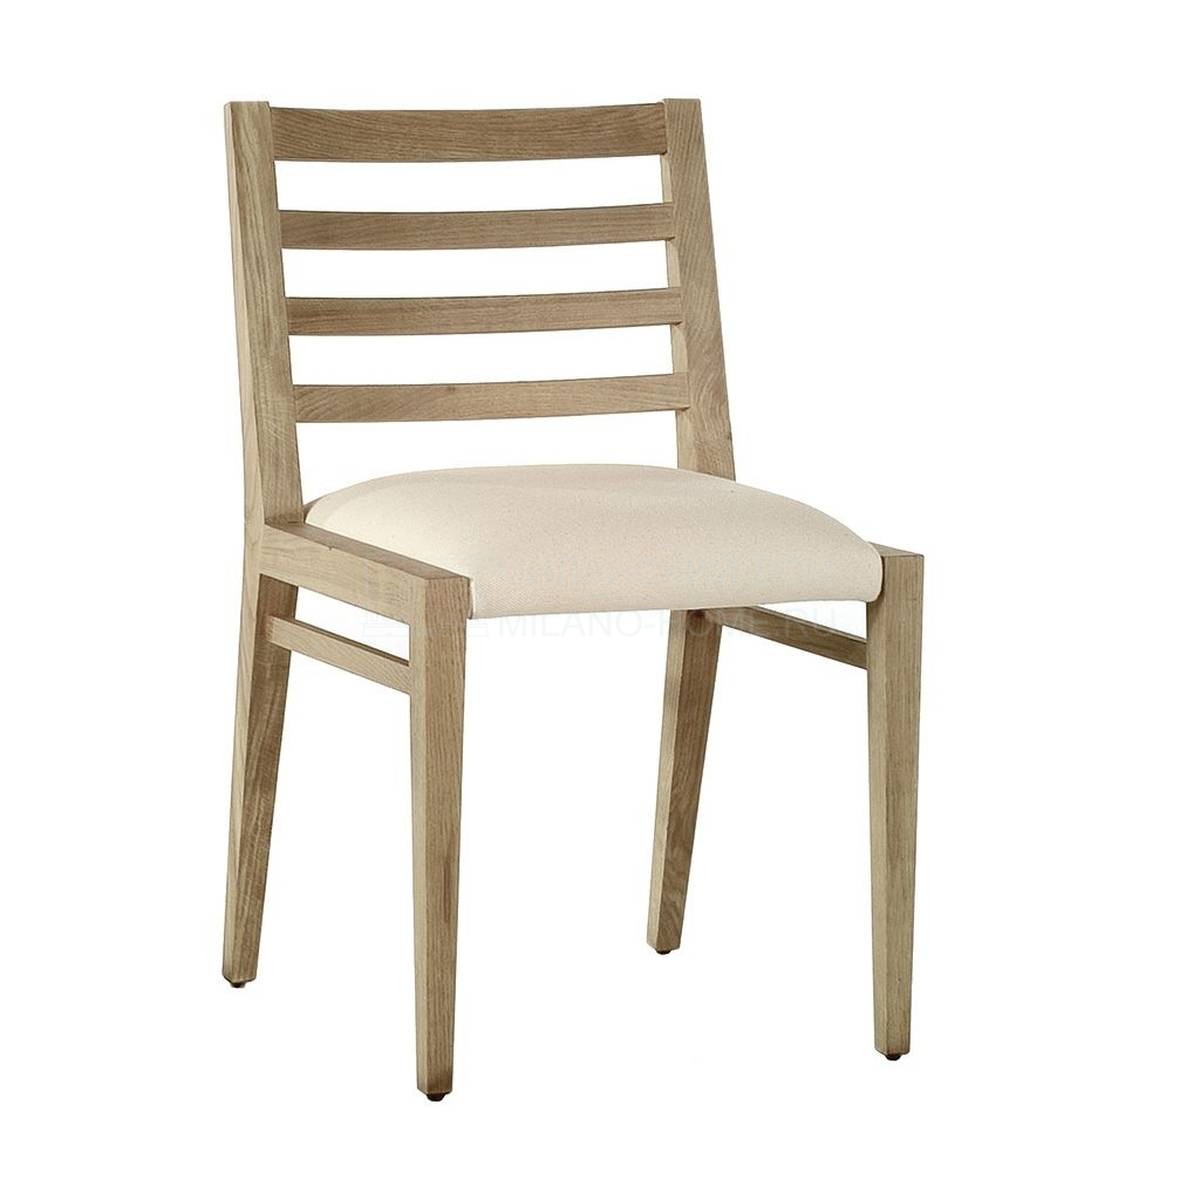 Стул M-3356 chair из Испании фабрики GUADARTE